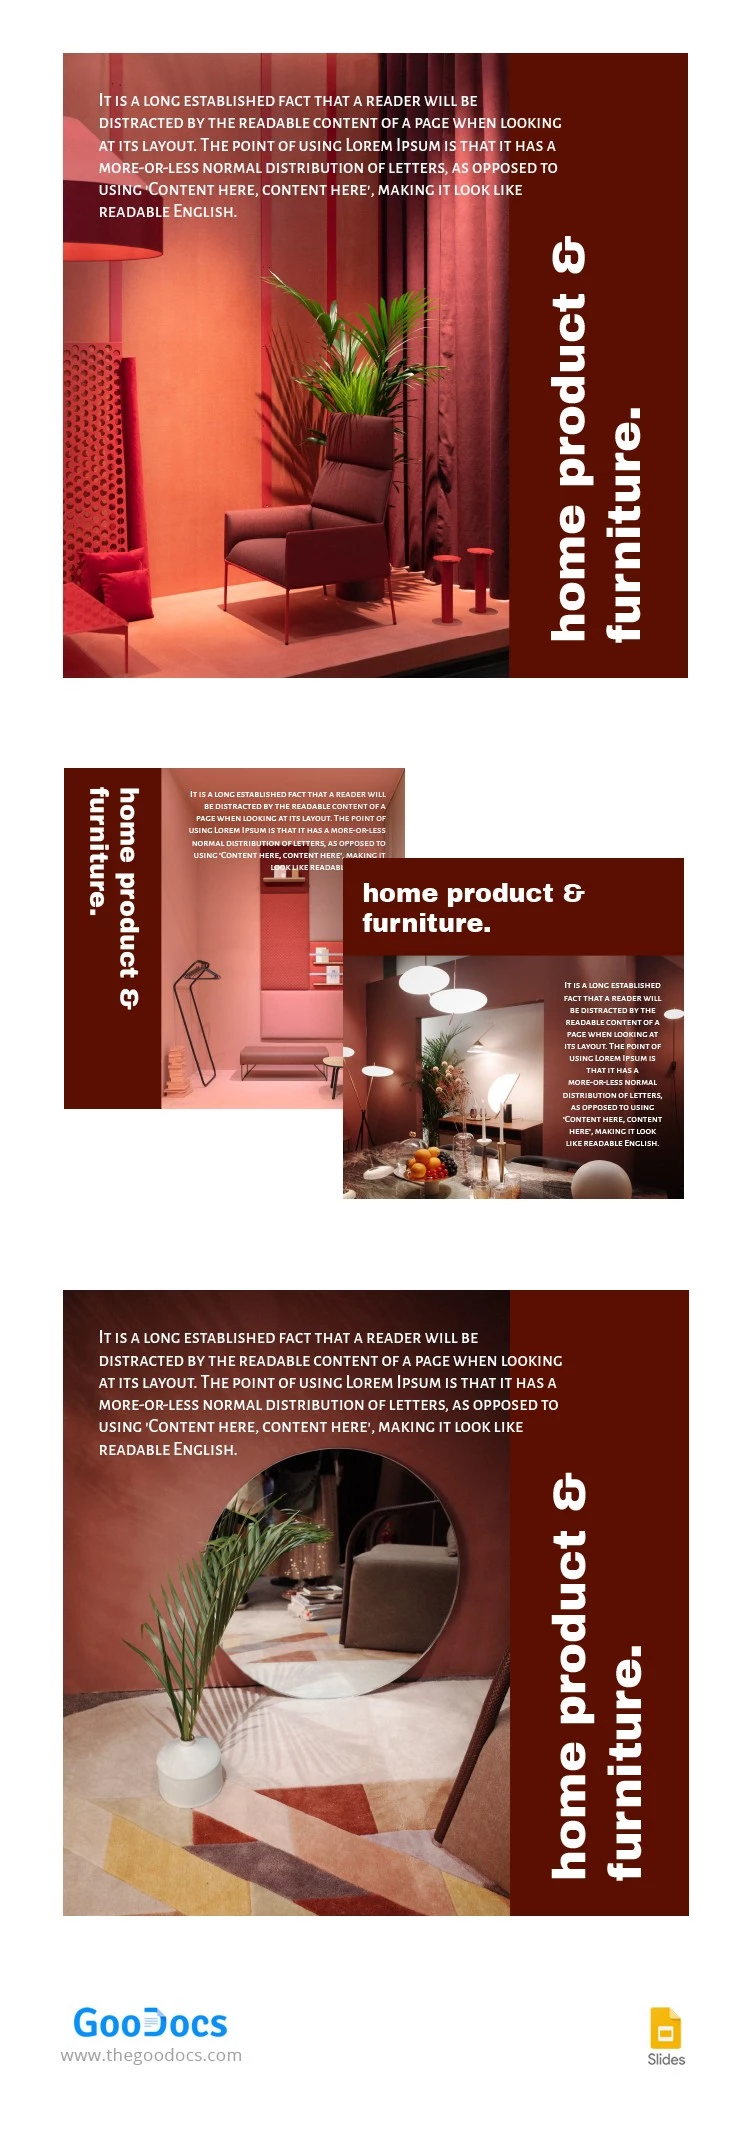 Muebles para el hogar de color rojo en Amazon. - free Google Docs Template - 10064277